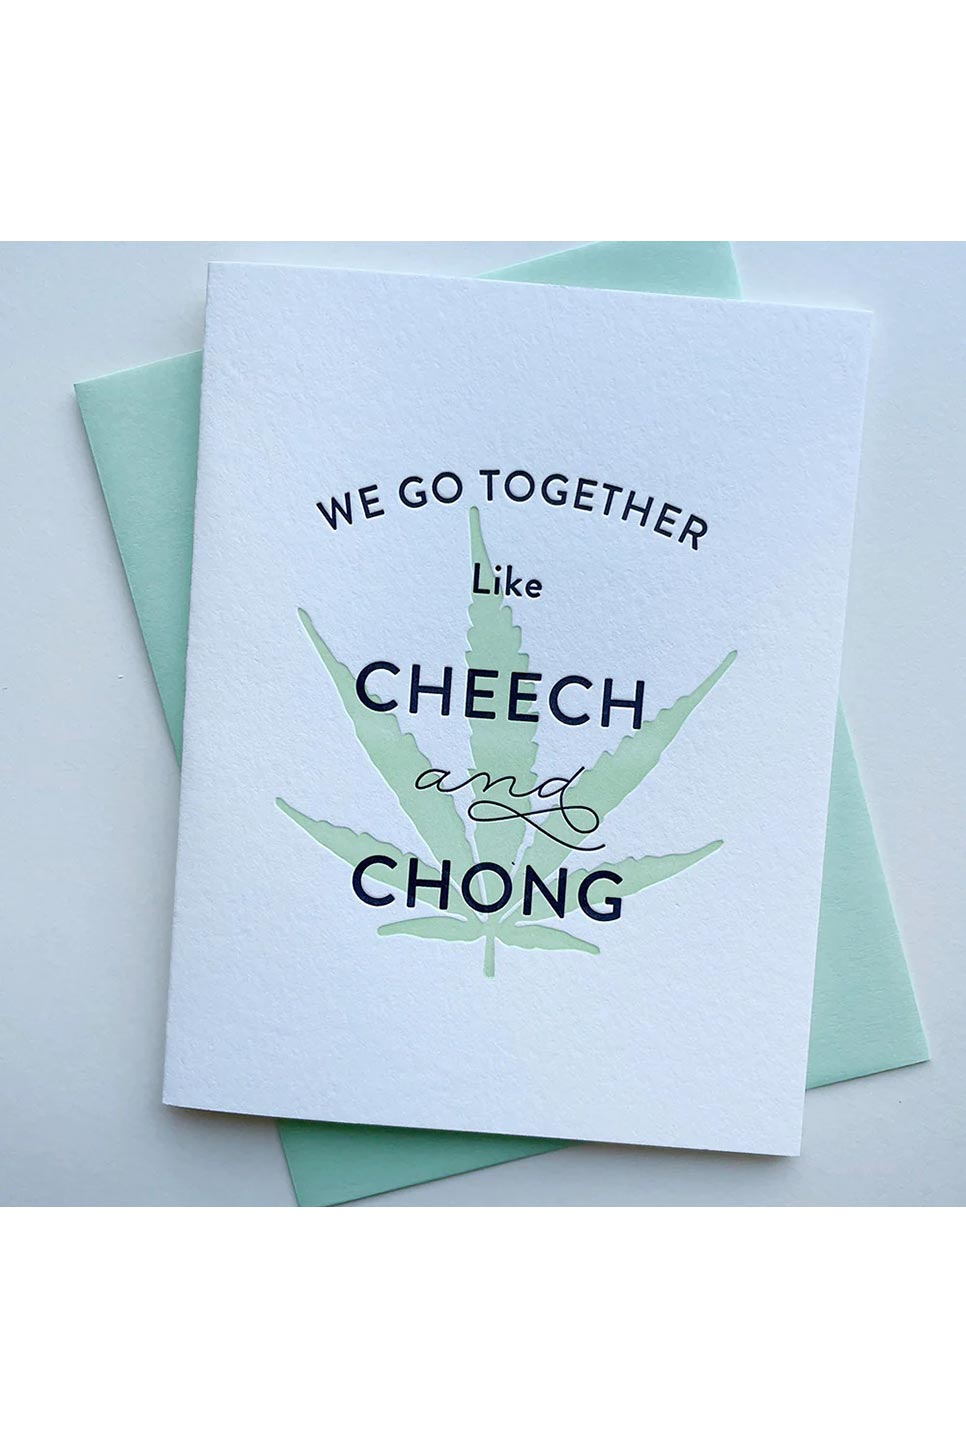 CHEECH AND CHONG CARD